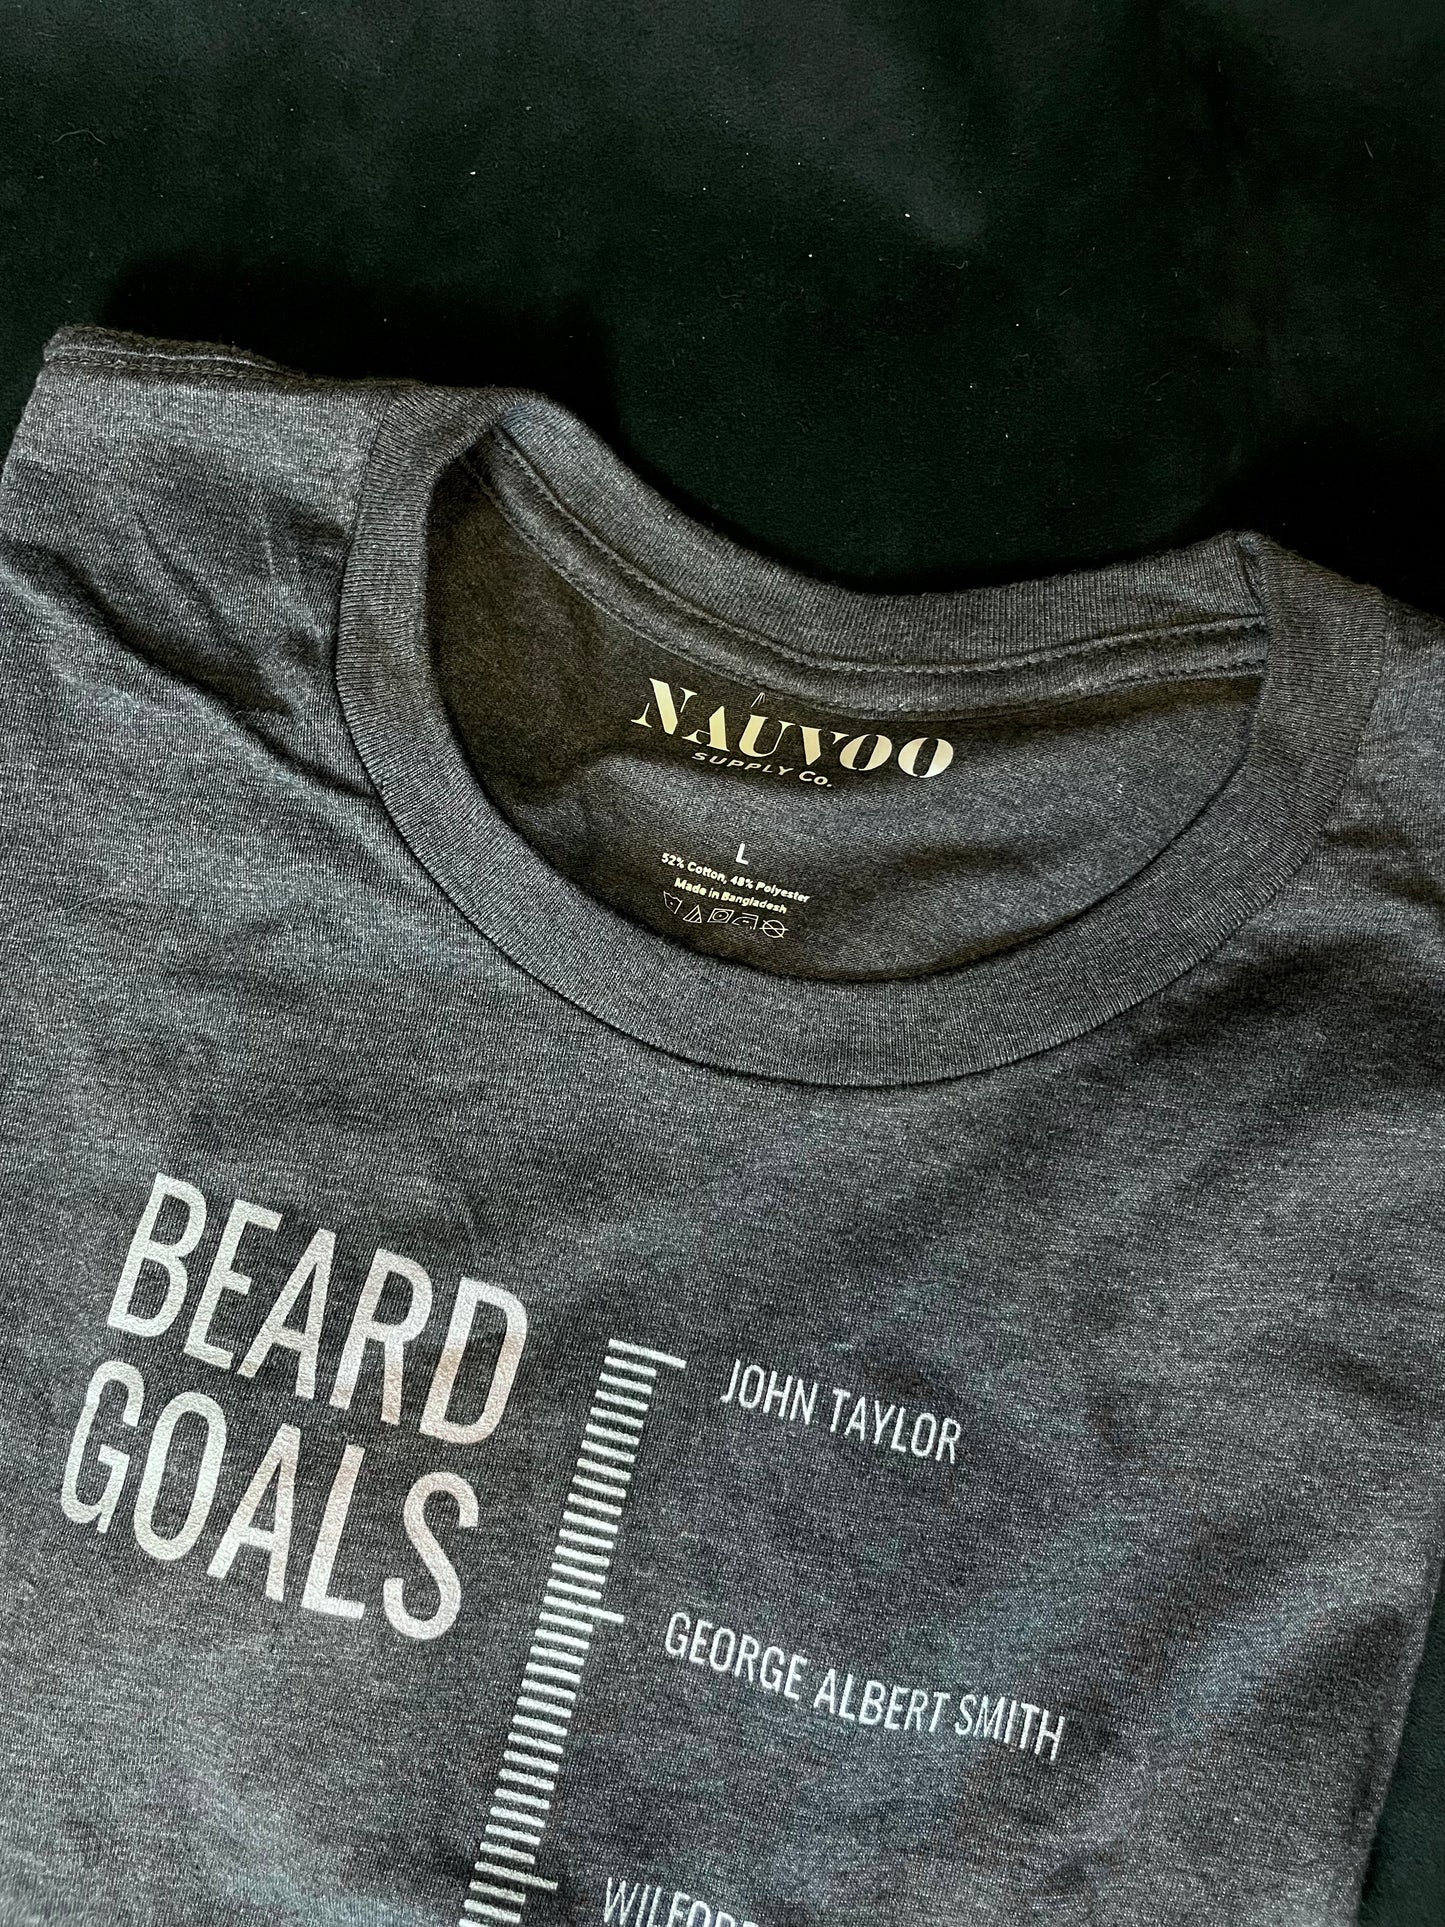 Beard Goals - Beards of LDS Prophets T-Shirt